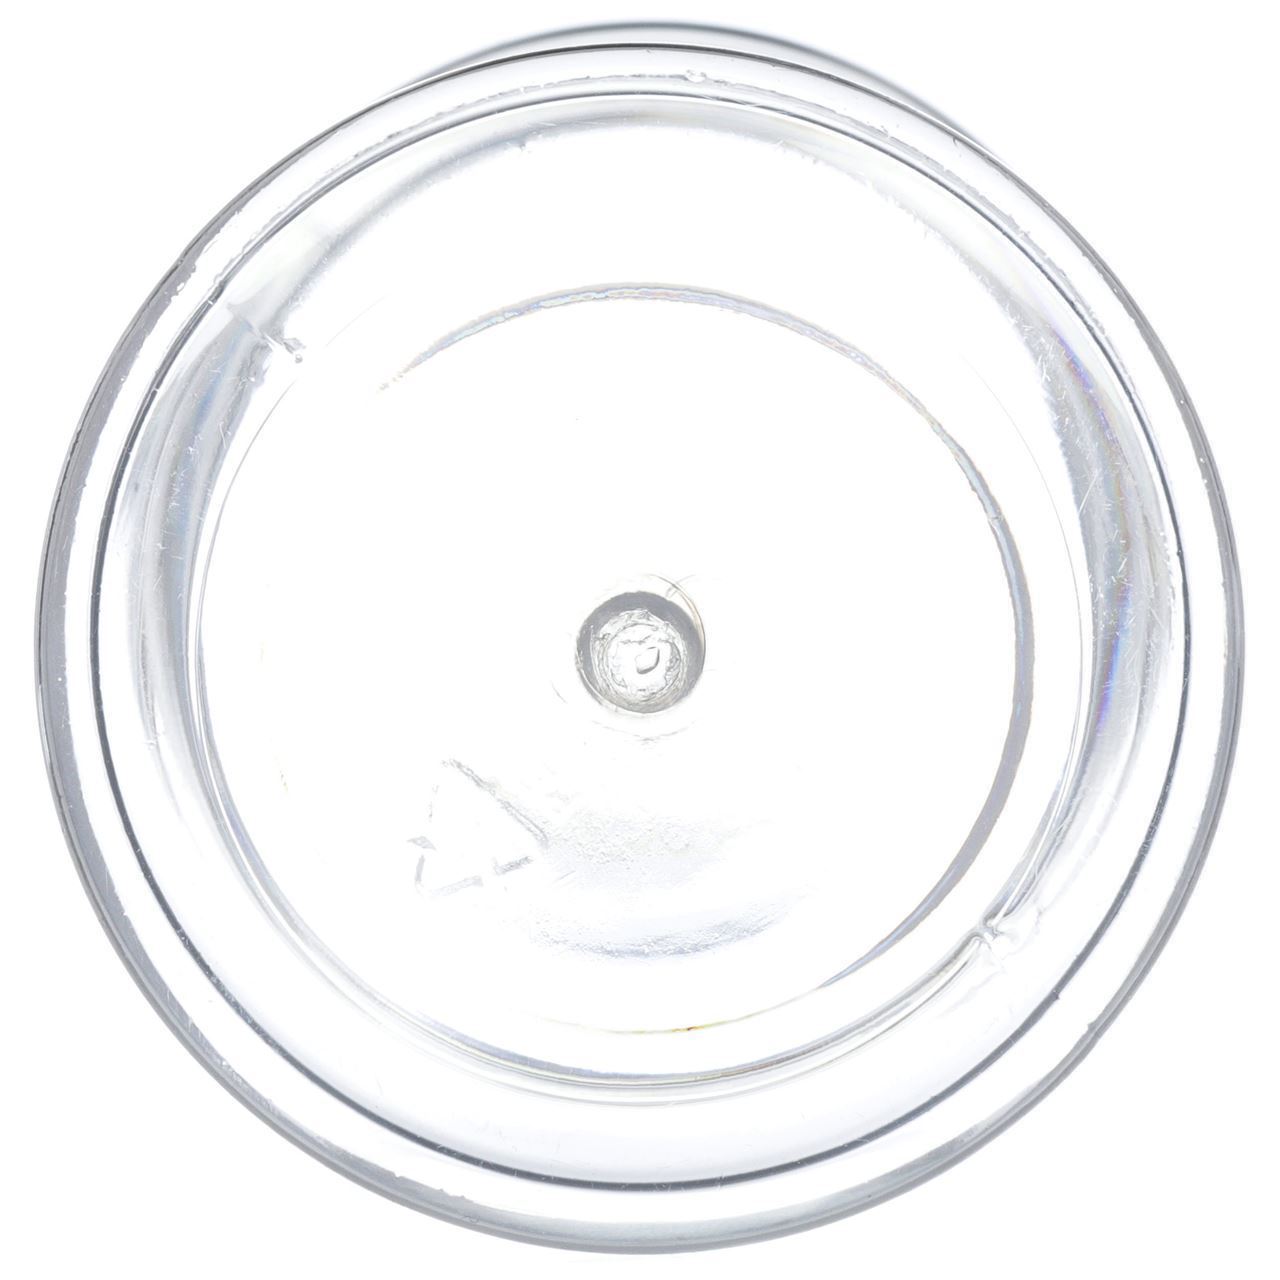 8.4 oz Clear PET Plastic Spice Jar, 53mm 53-485, 12x1 Reshipper Box